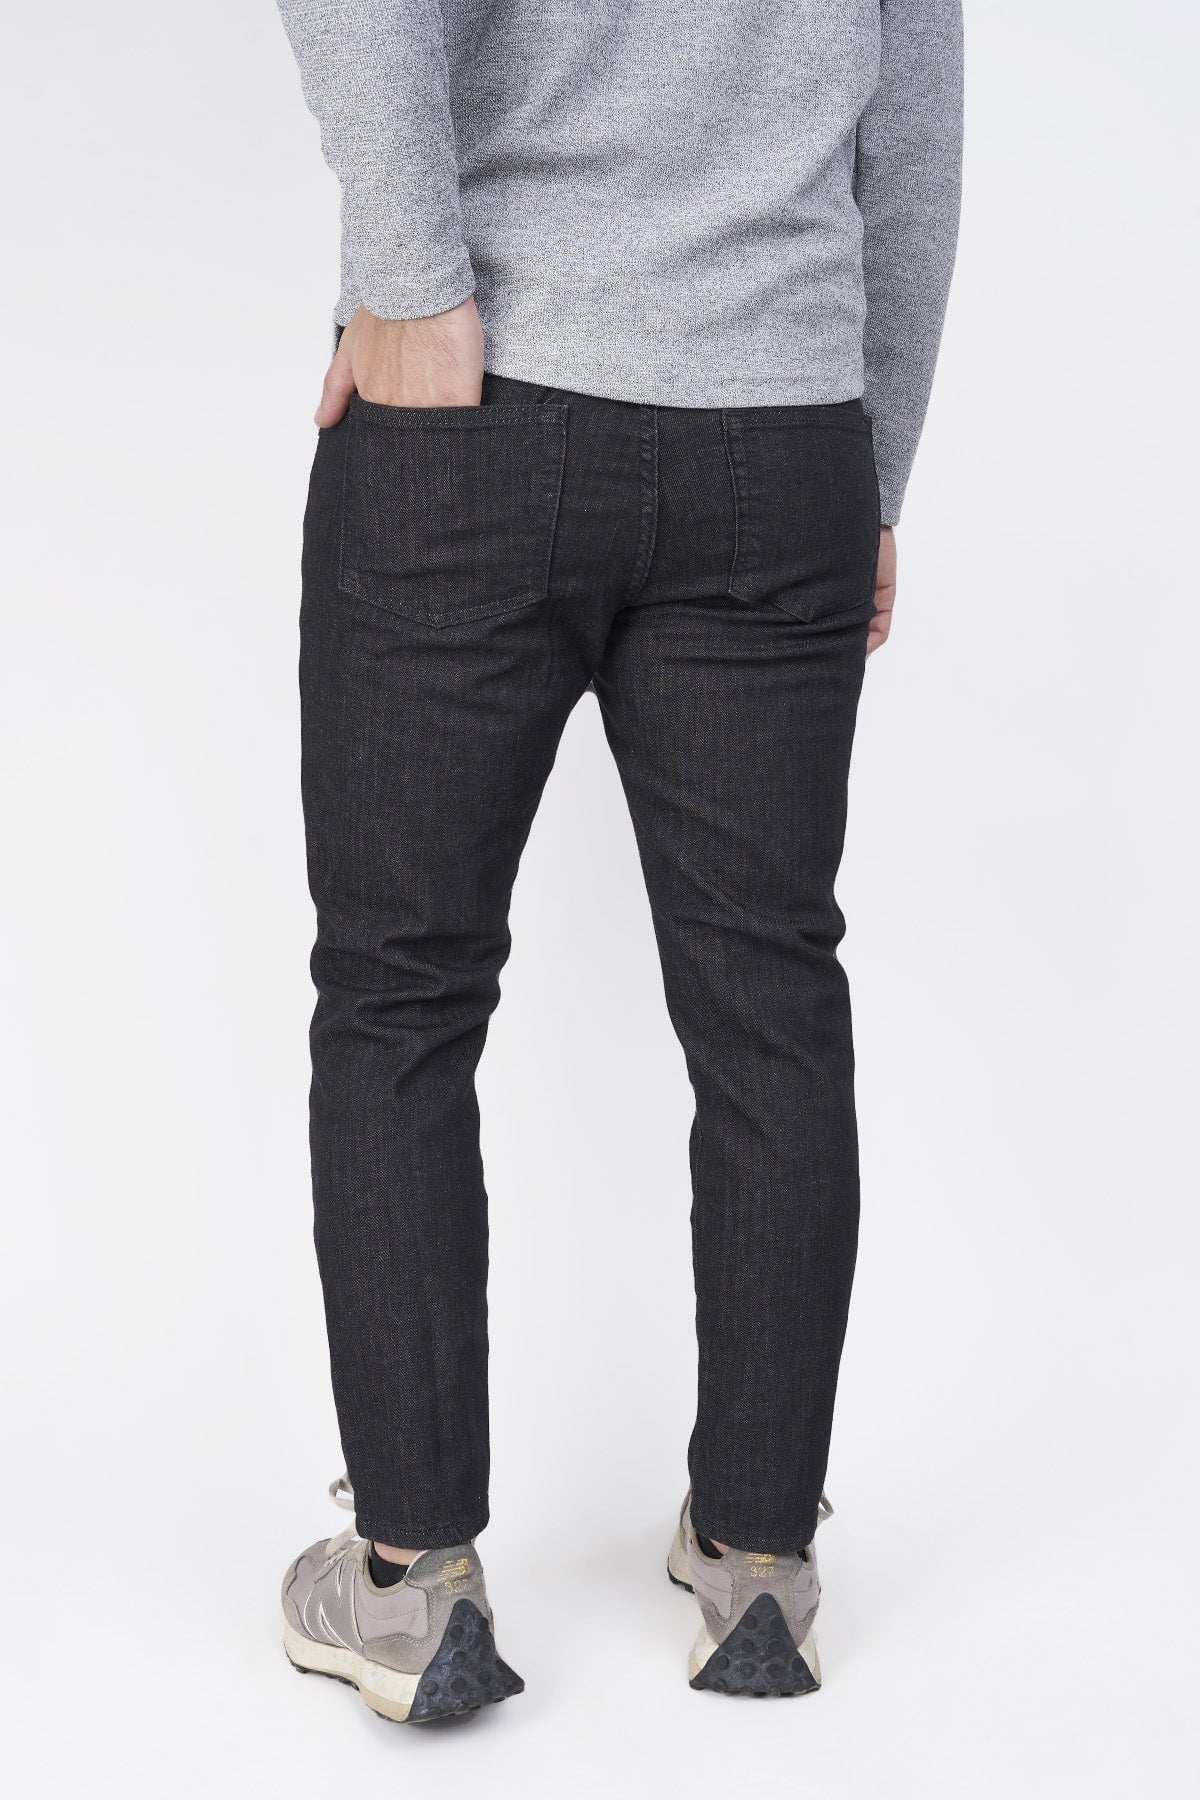 The Bruce Black | Jeans for Short Men | Under 510 – Under 5'10